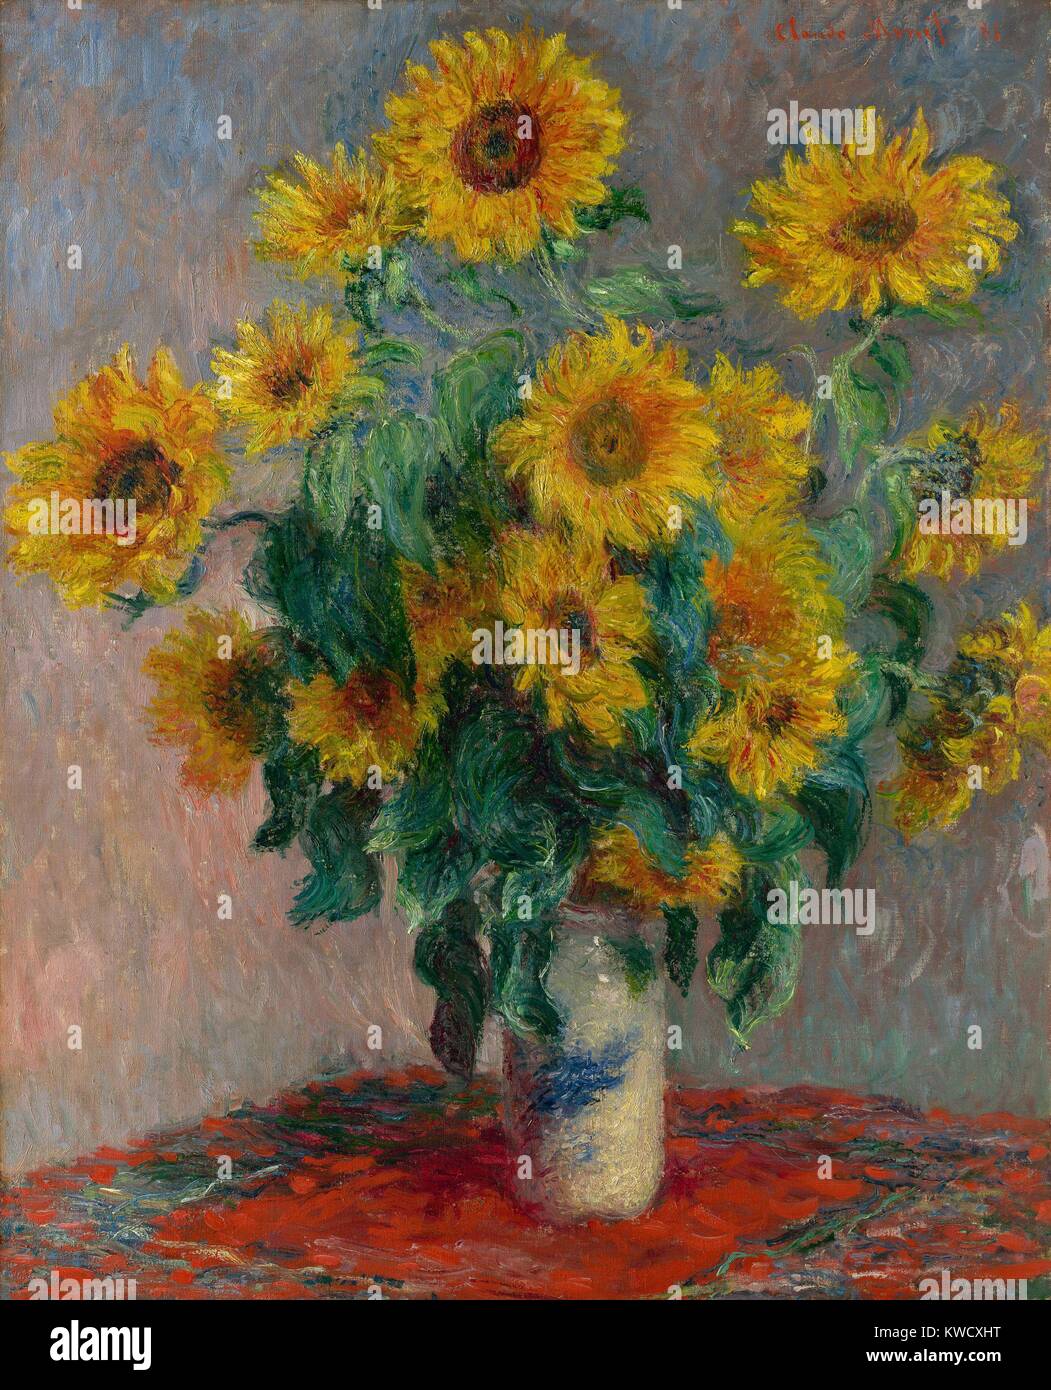 Bouquet de tournesols, par Claude Monet, 1881, la peinture impressionniste français, huile sur toile. Tournesols dans un vase japonais sur une nappe rouge (BSLOC 2017 3 33) Banque D'Images